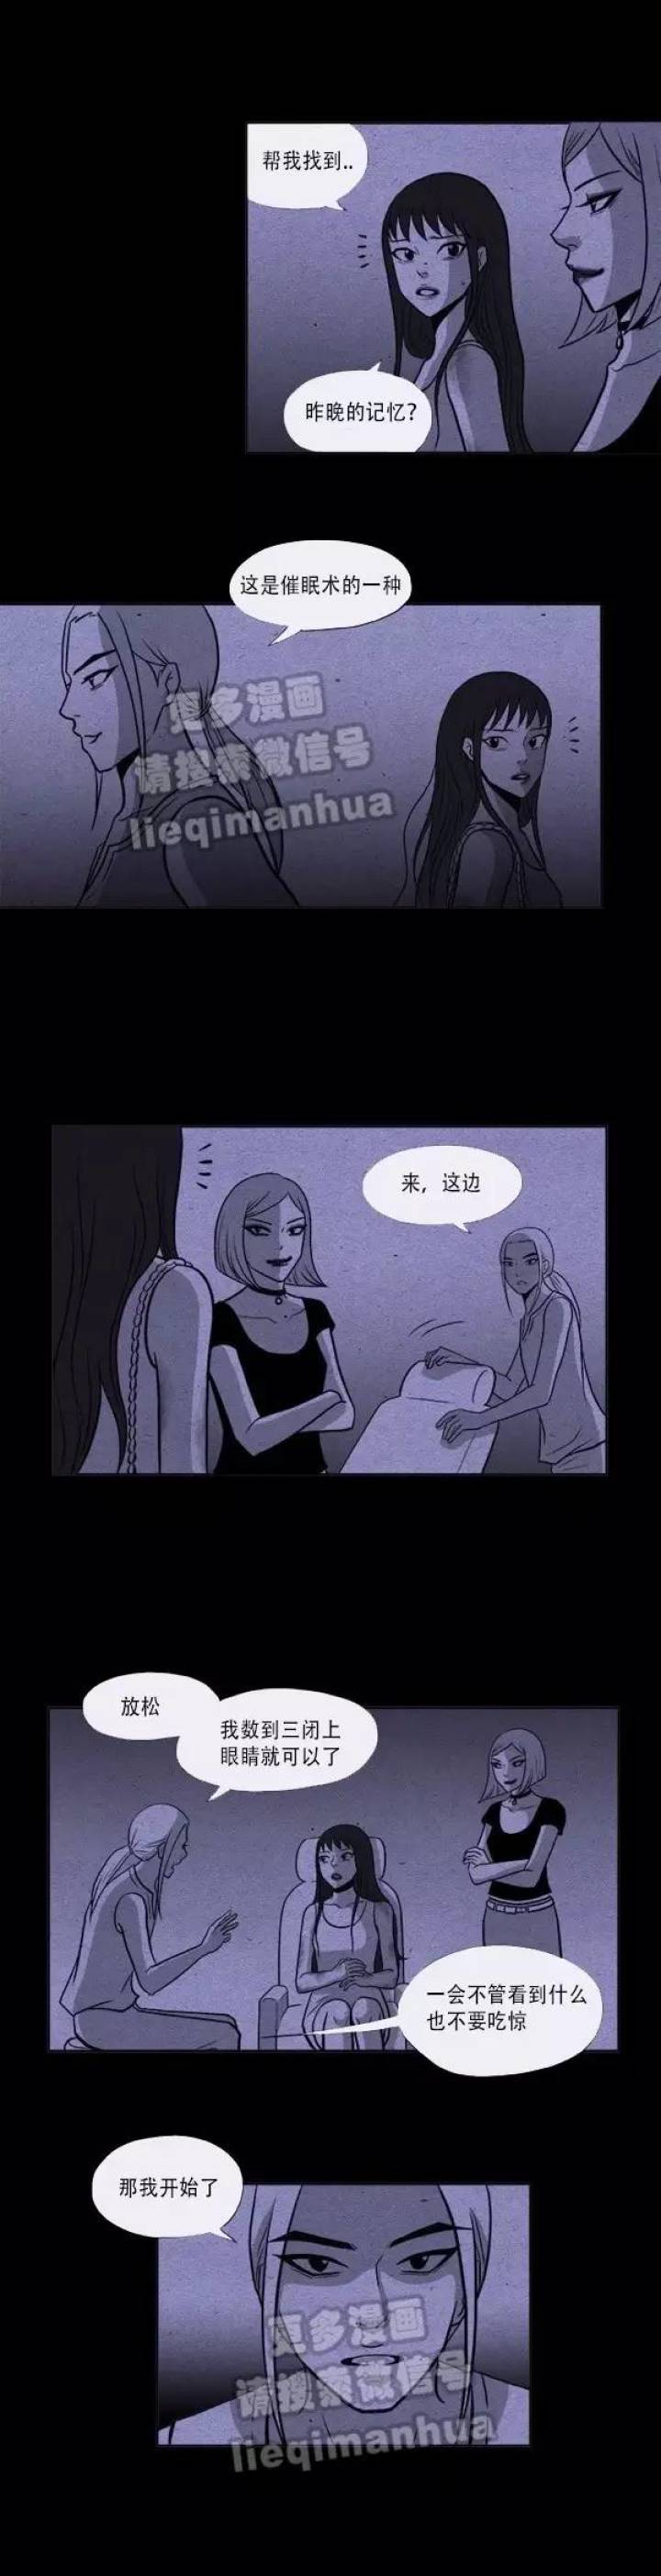 韩国漫画《宿醉》-黑白漫话